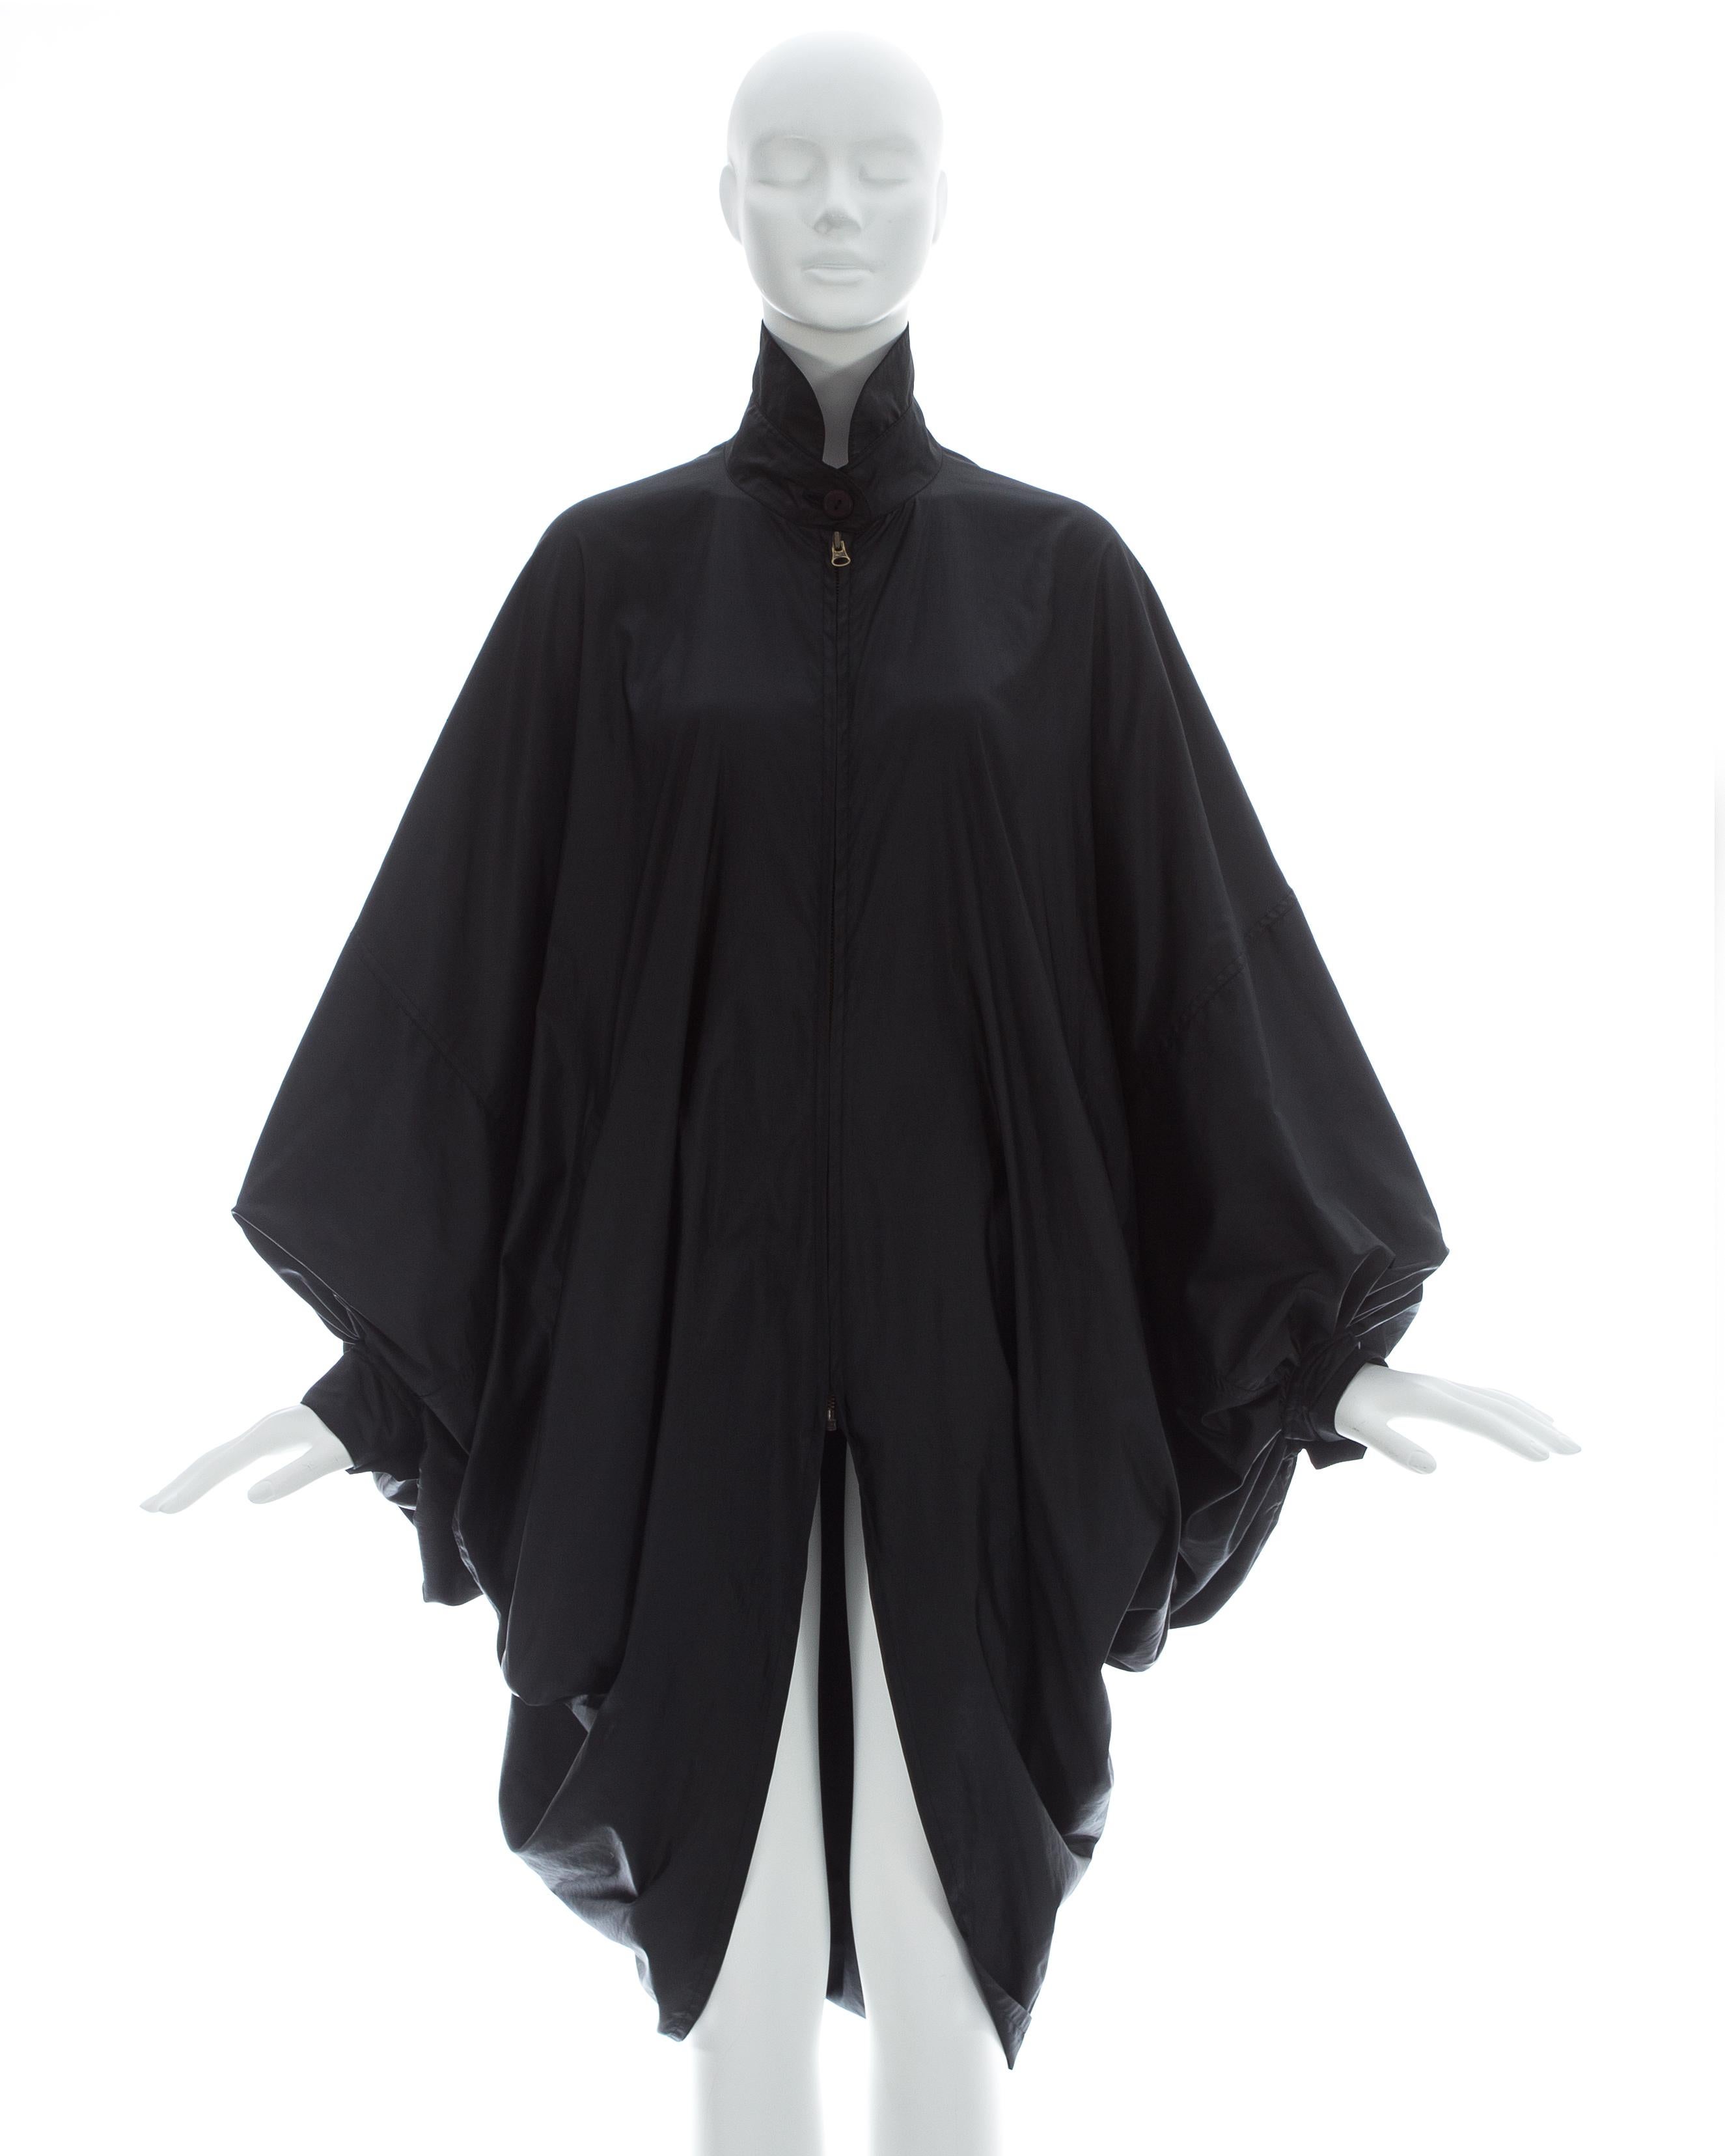 Issey Miyake ; manteau noir en nylon parachute surdimensionné, manches chauve-souris et deux poches avant.

Automne-Hiver 1987